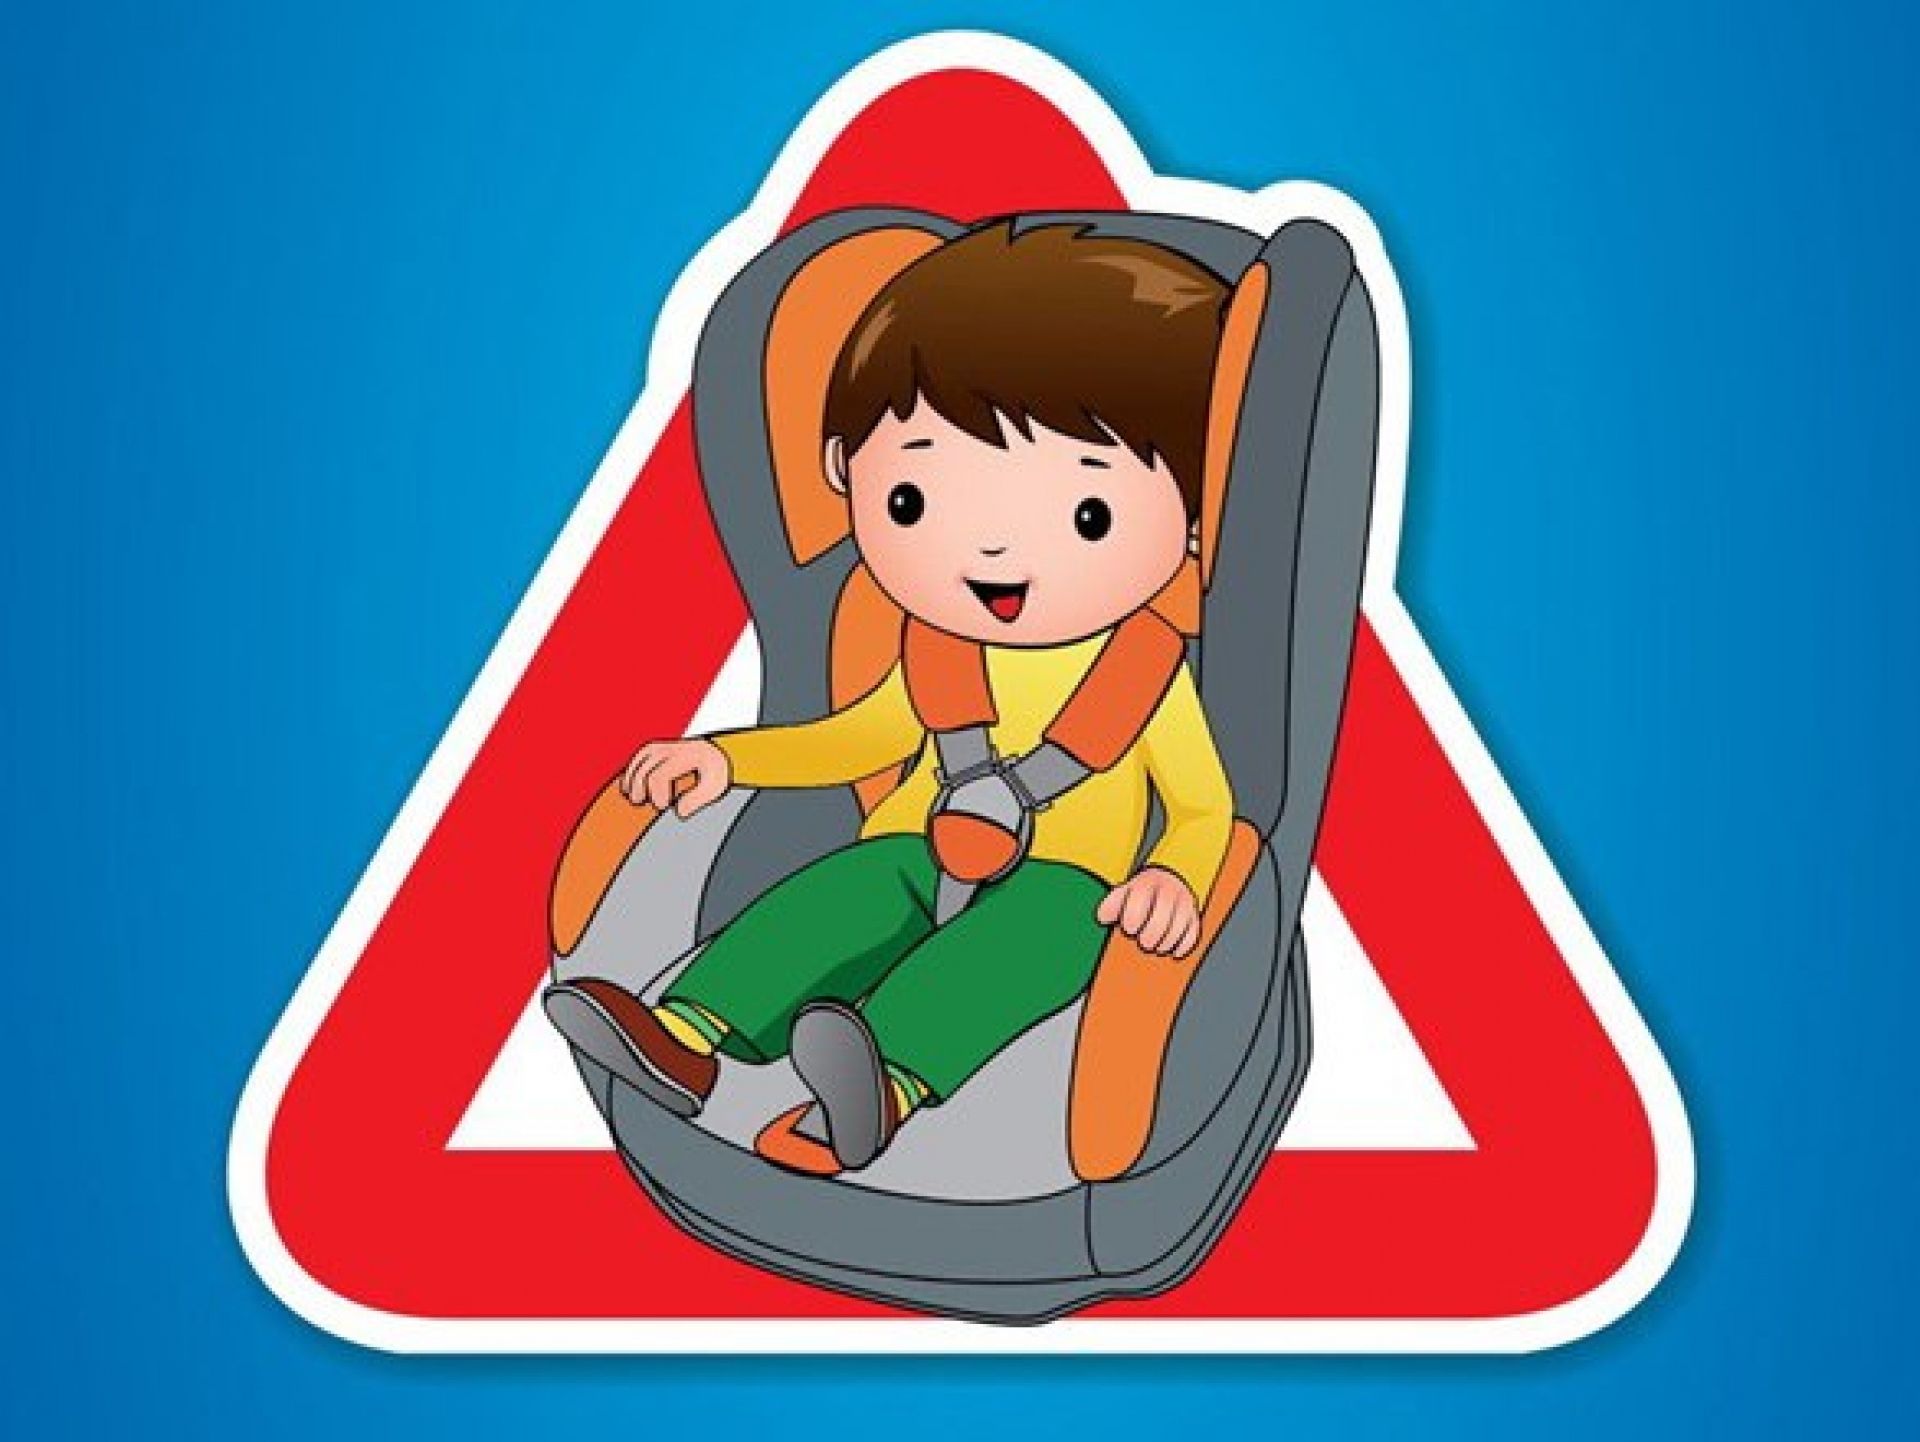 кресла безопасности для детей на автомобили